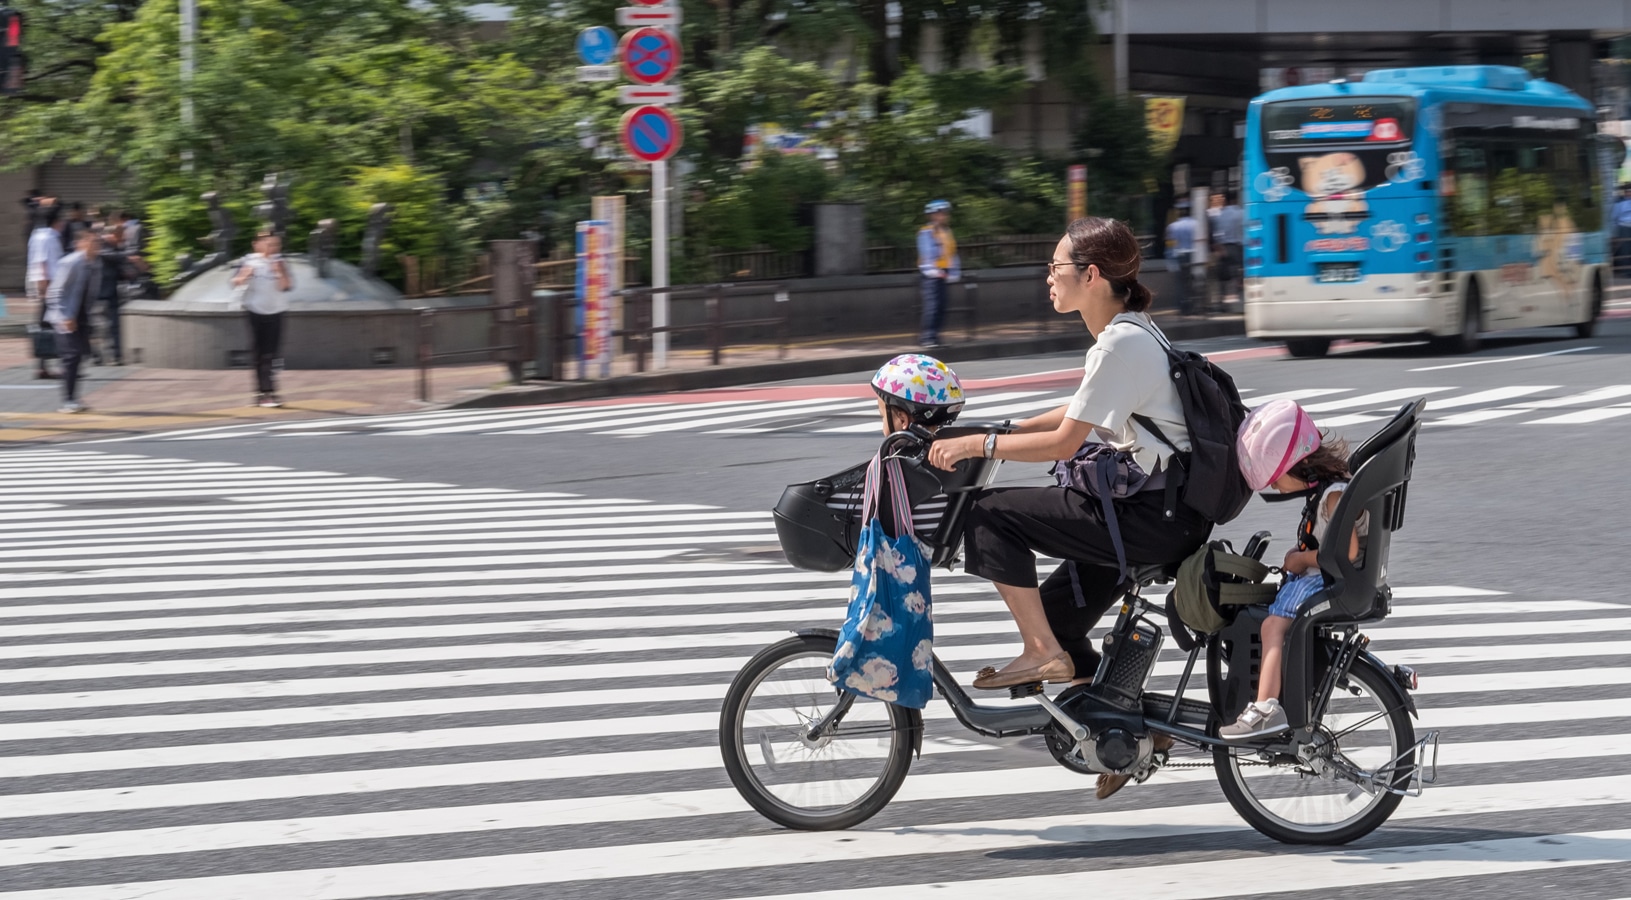 Doprava v Tokiu - kola mamačari jsou uzpůsobena k jízdě s dětmi i nákupem